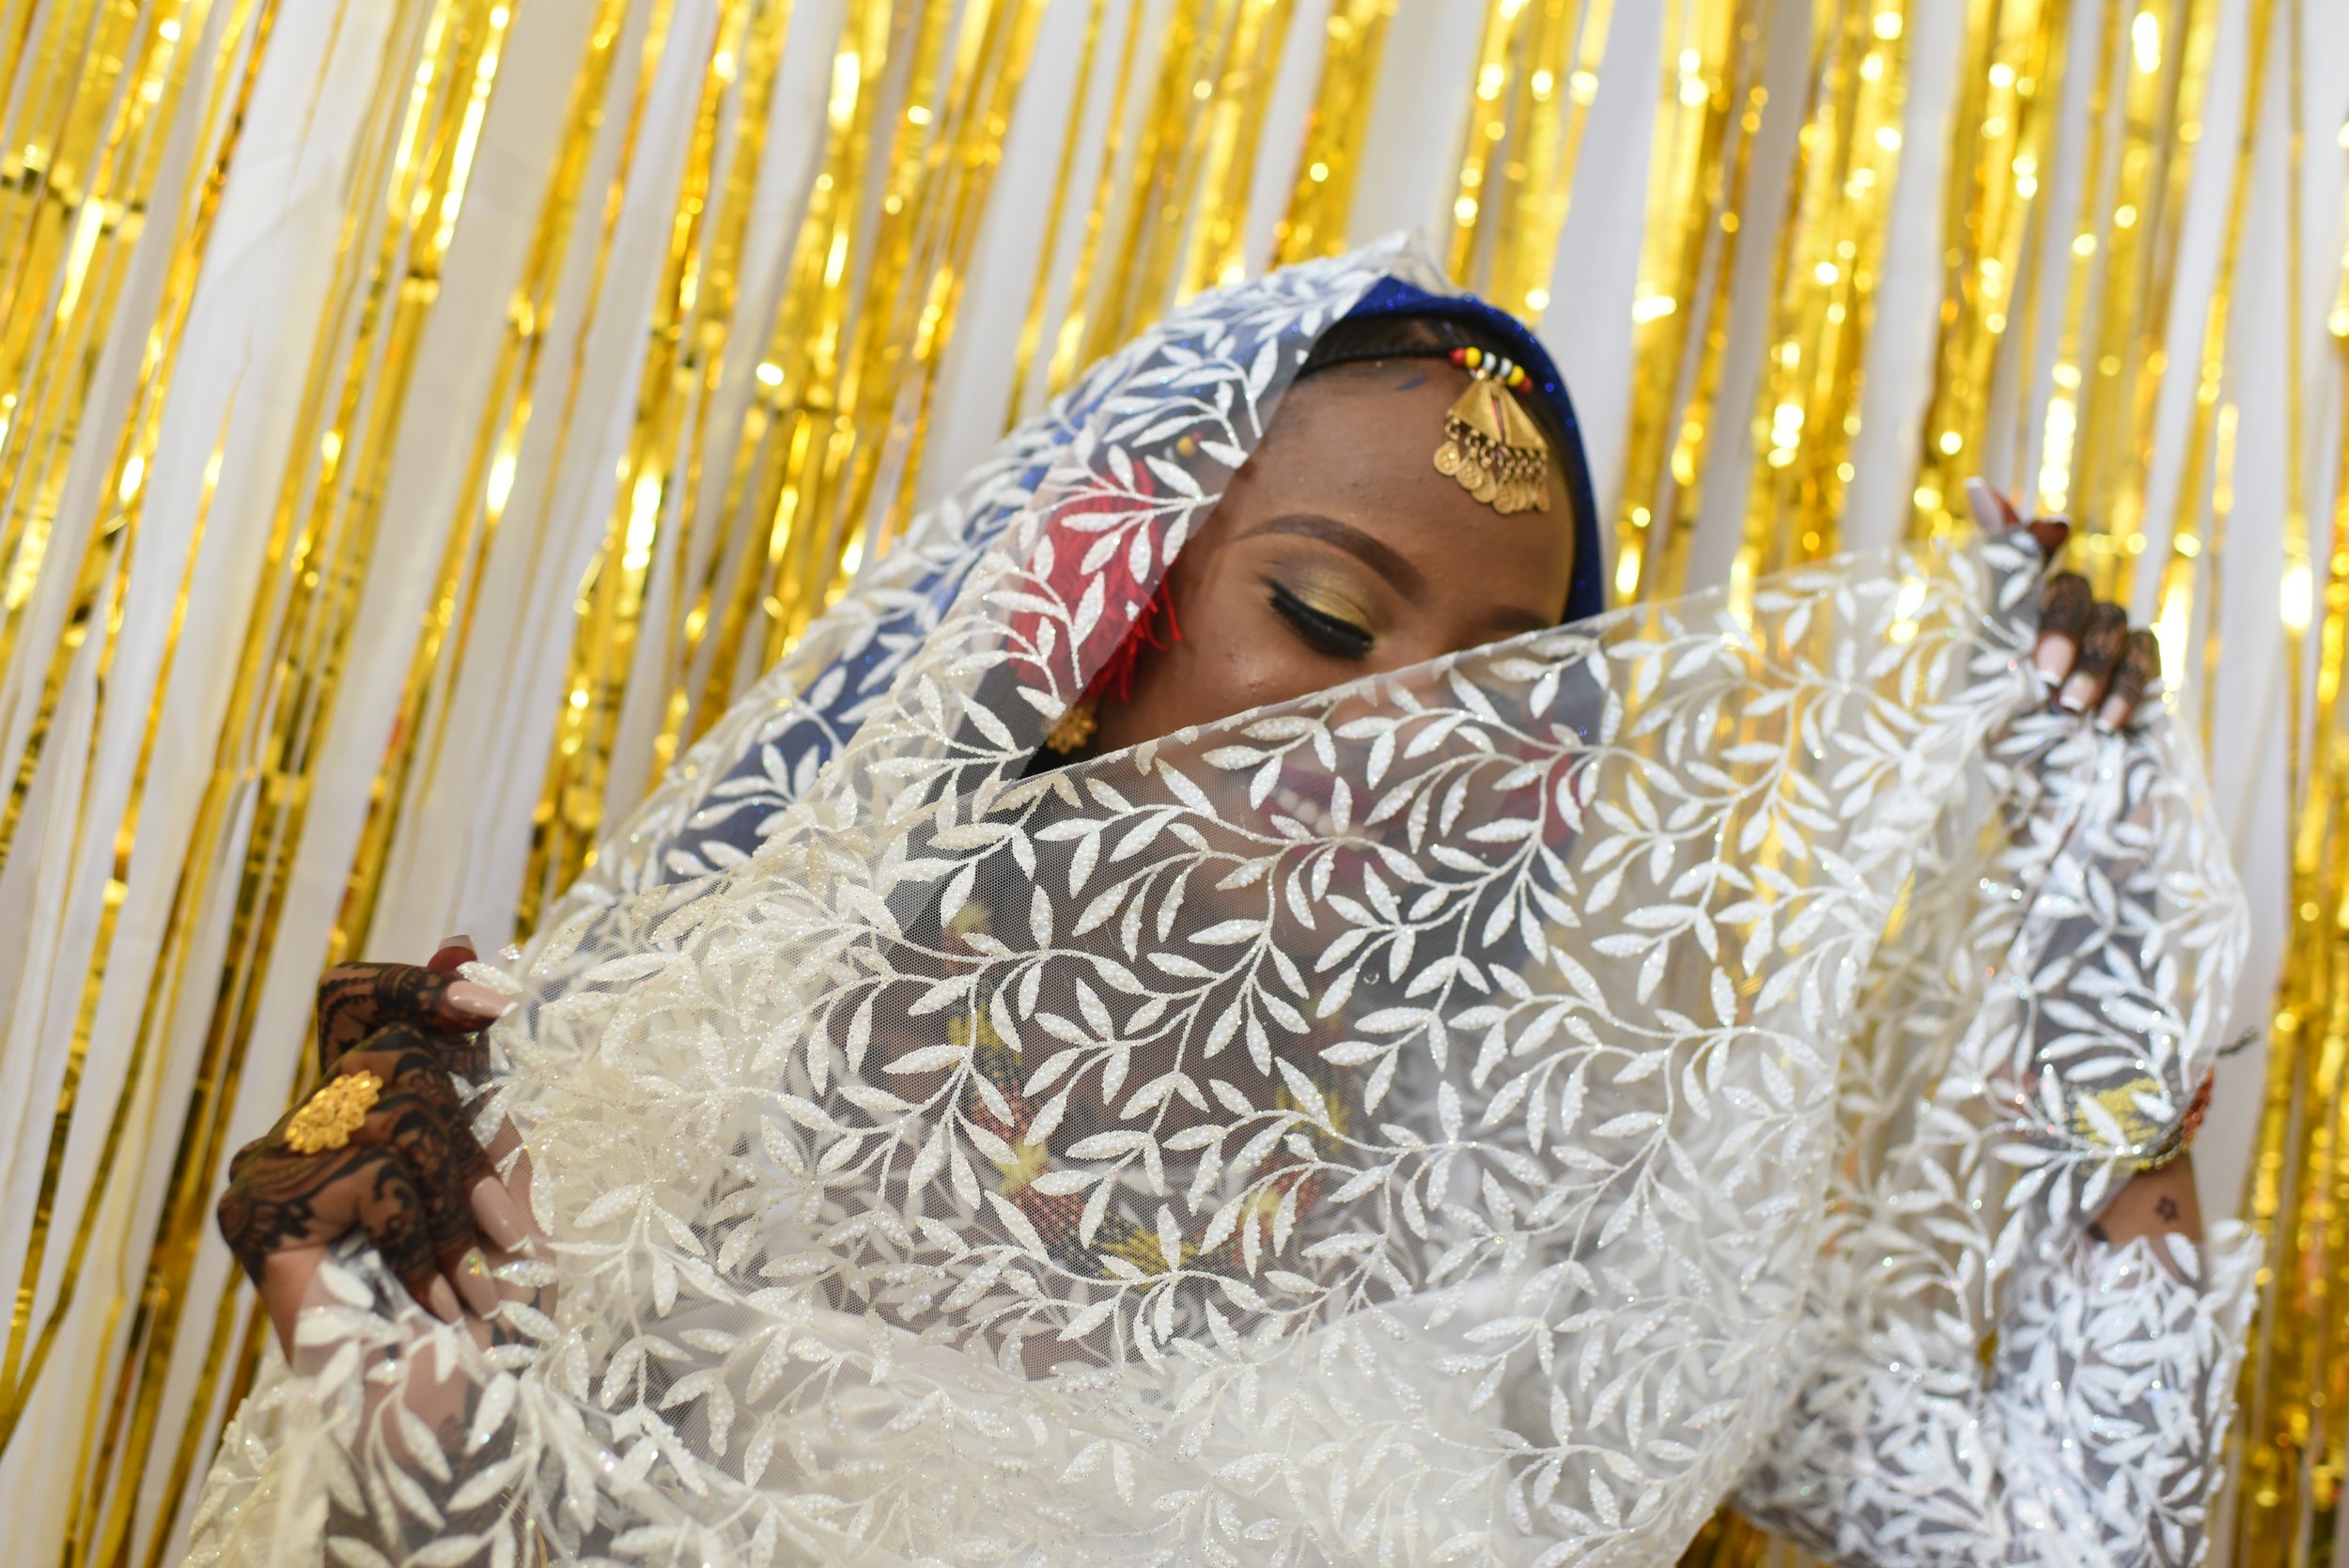 Nubian Bride